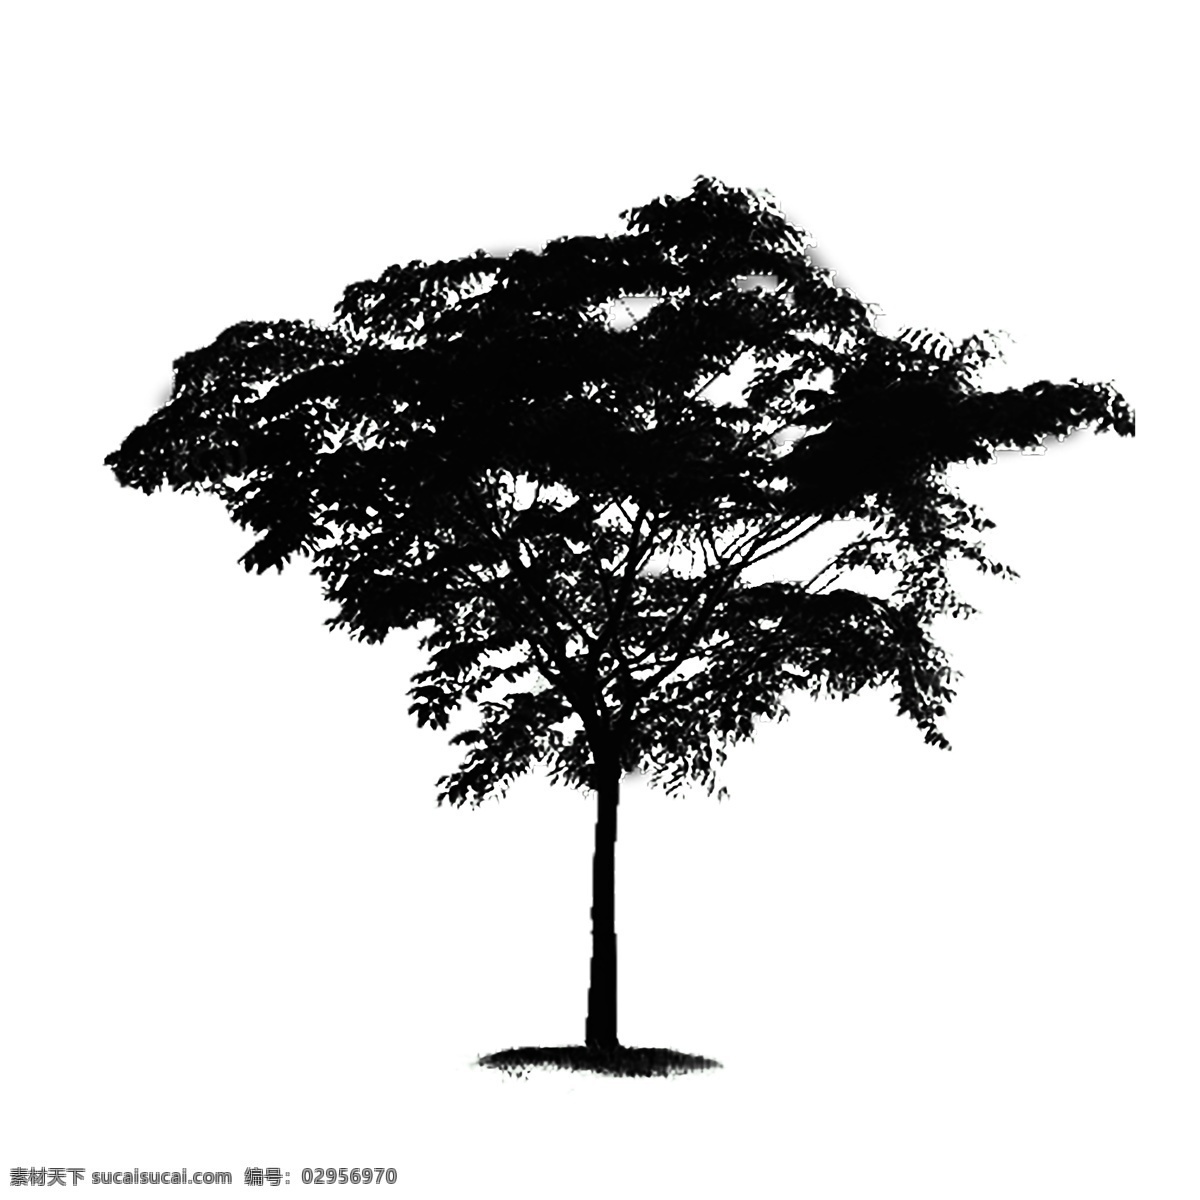 树 剪影 简约 黑白 植物